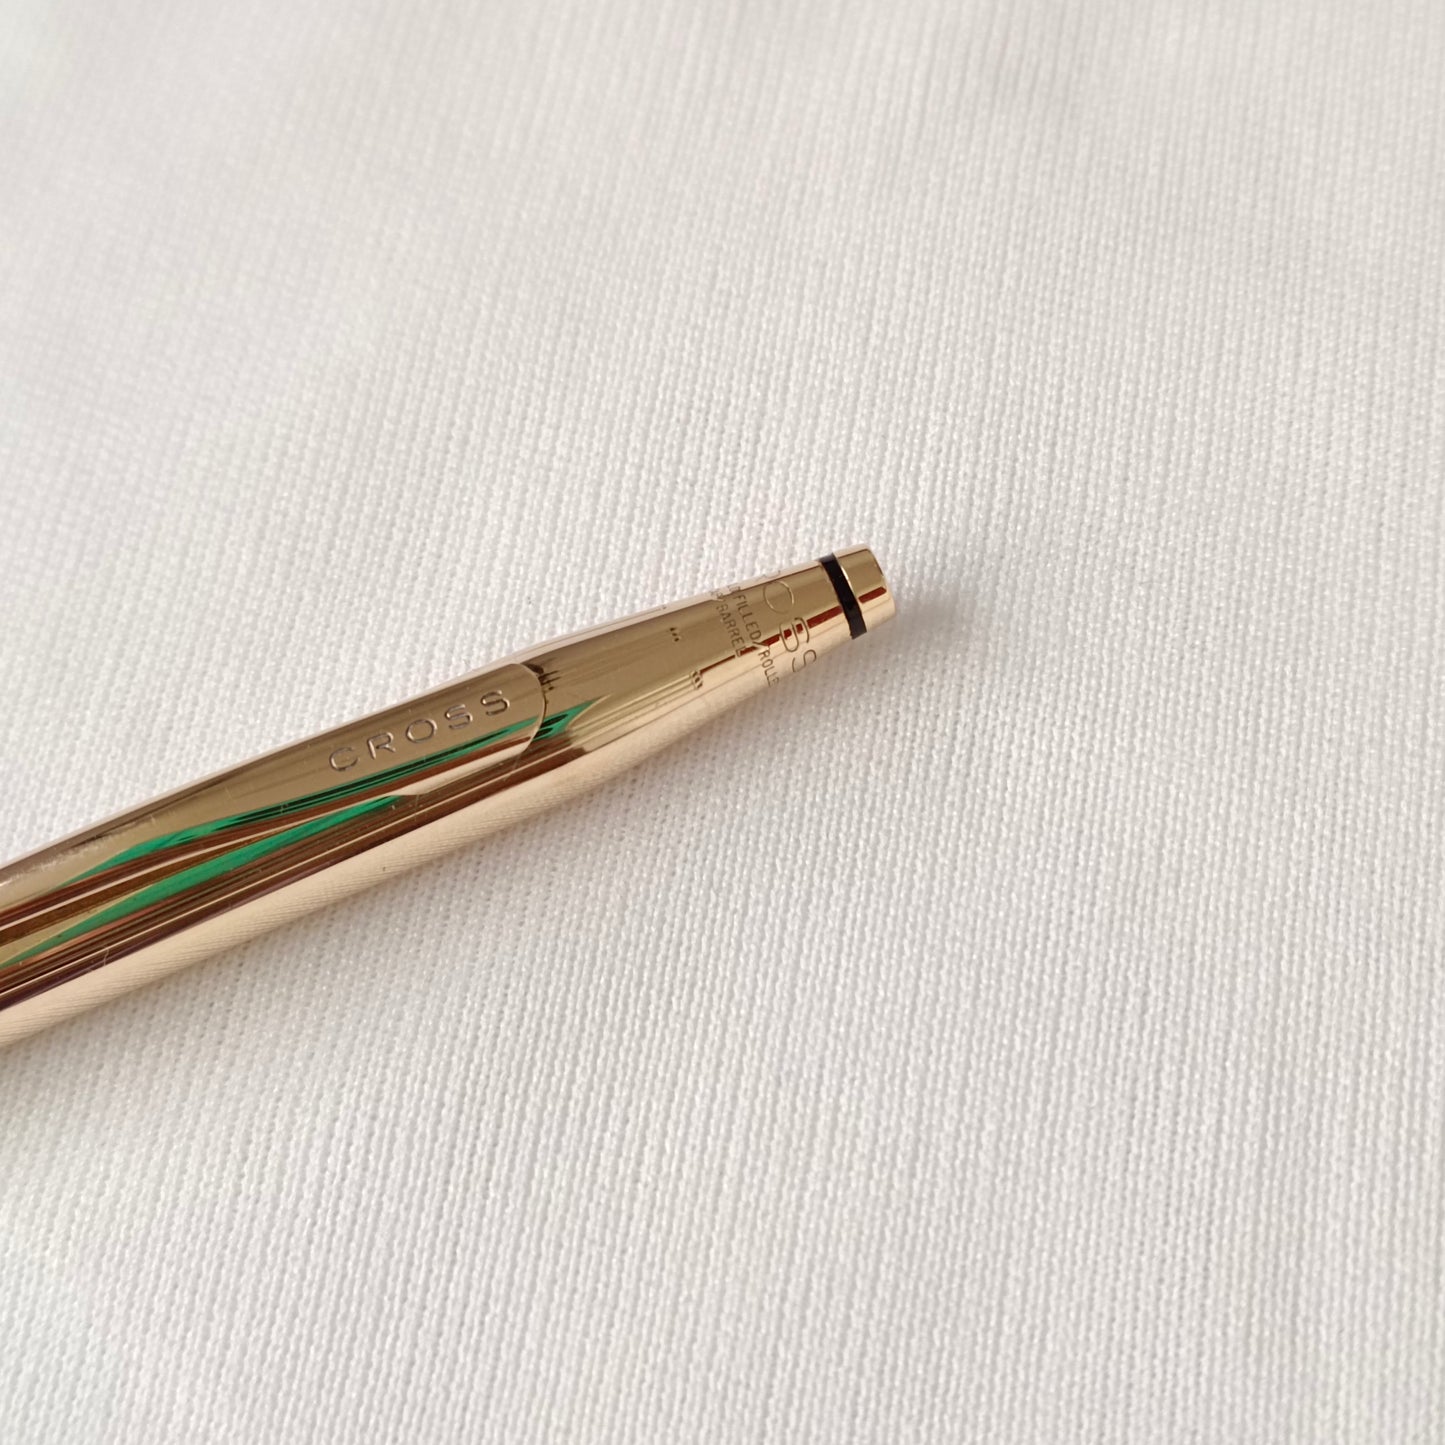 Cross 1/20 18kt Gold Filled Mechanical Pencil